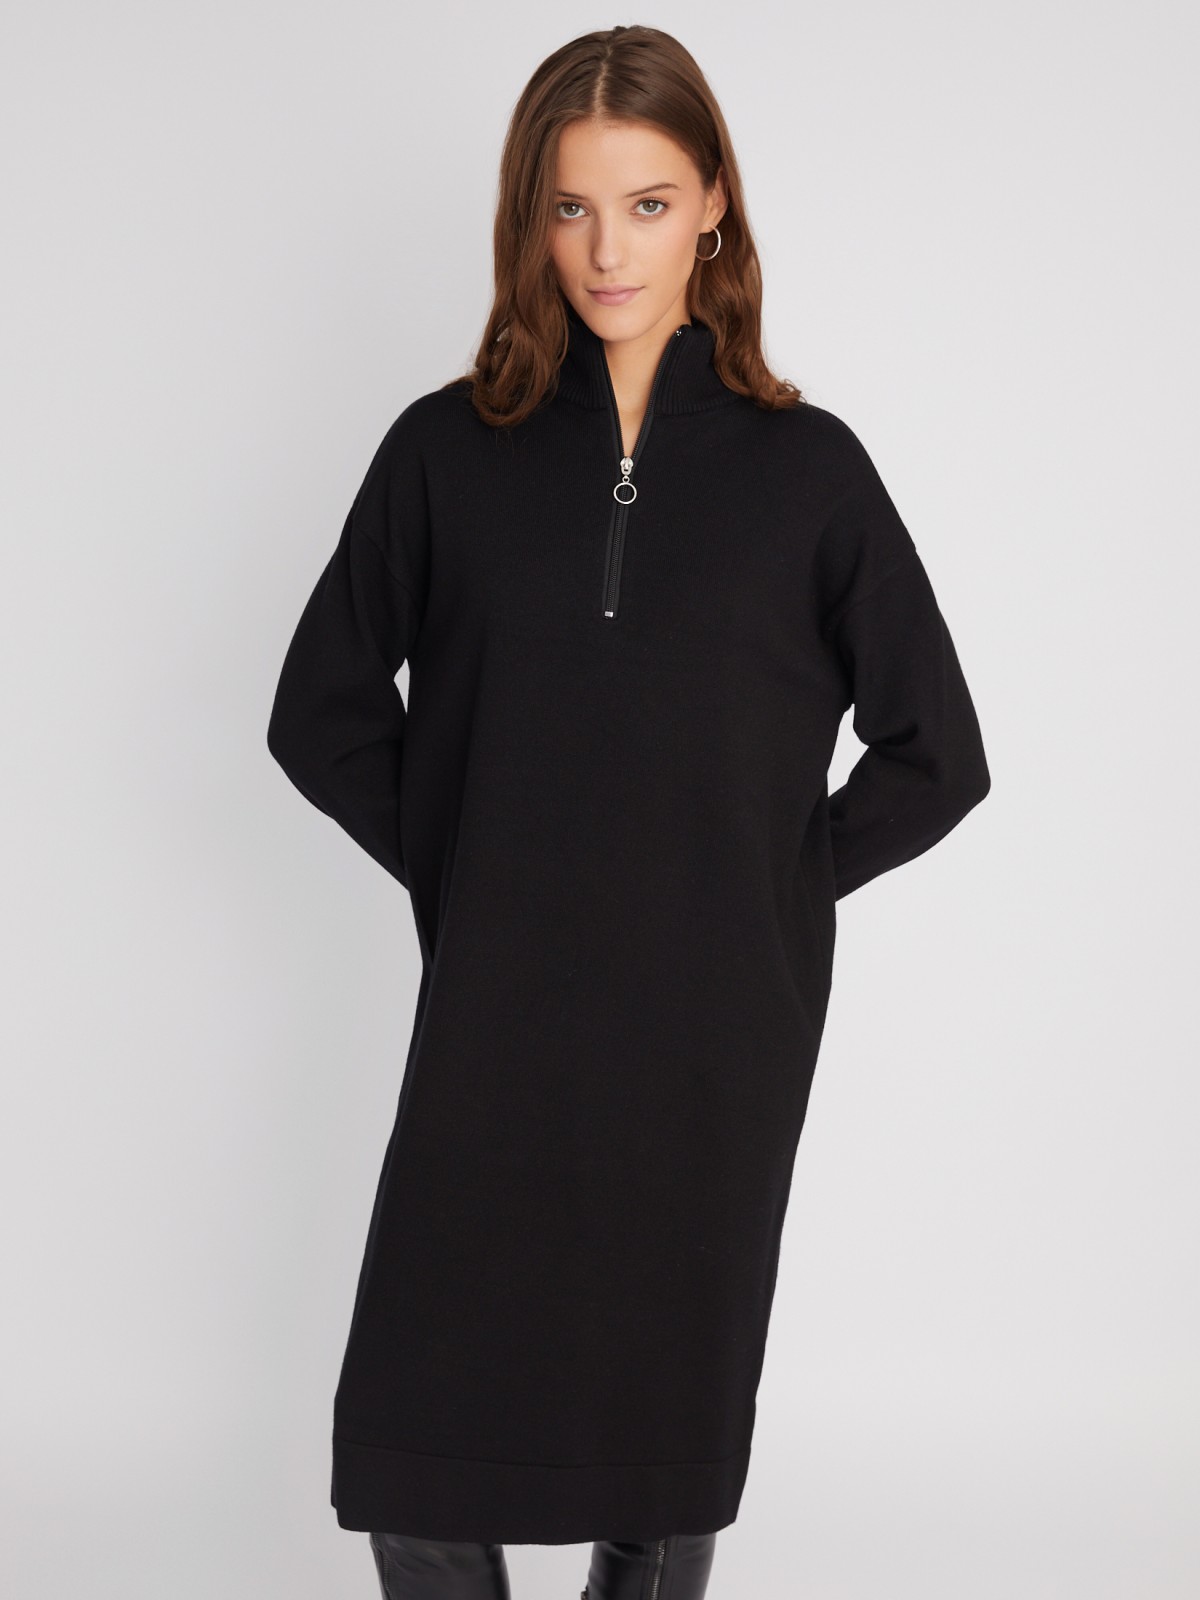 Трикотажное платье-свитер с высоким горлом на молнии zolla 023428442033, цвет черный, размер XS